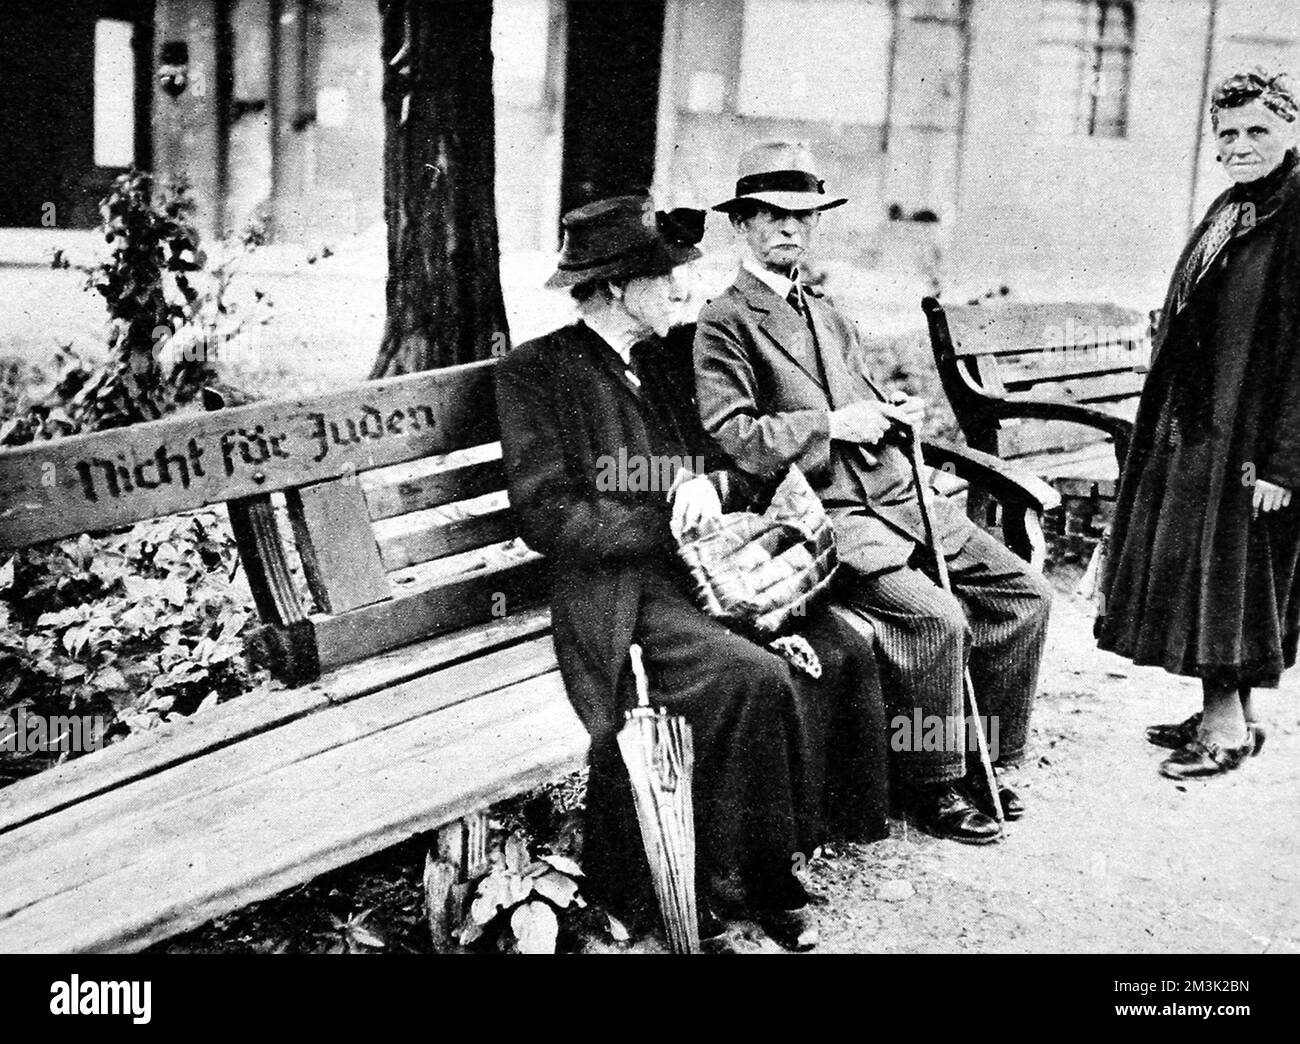 Due cittadini di Berlino seduti su un banco pubblico segnato con la leggenda "Nicht fur Juden" (non per ebrei), Berlino, 1945. Questa reliquia dello stato nazista antisemita (1933-45) riuscì a sopravvivere a tutti i bombardamenti e i combattimenti di Berlino durante la seconda guerra mondiale. 1945 Foto Stock